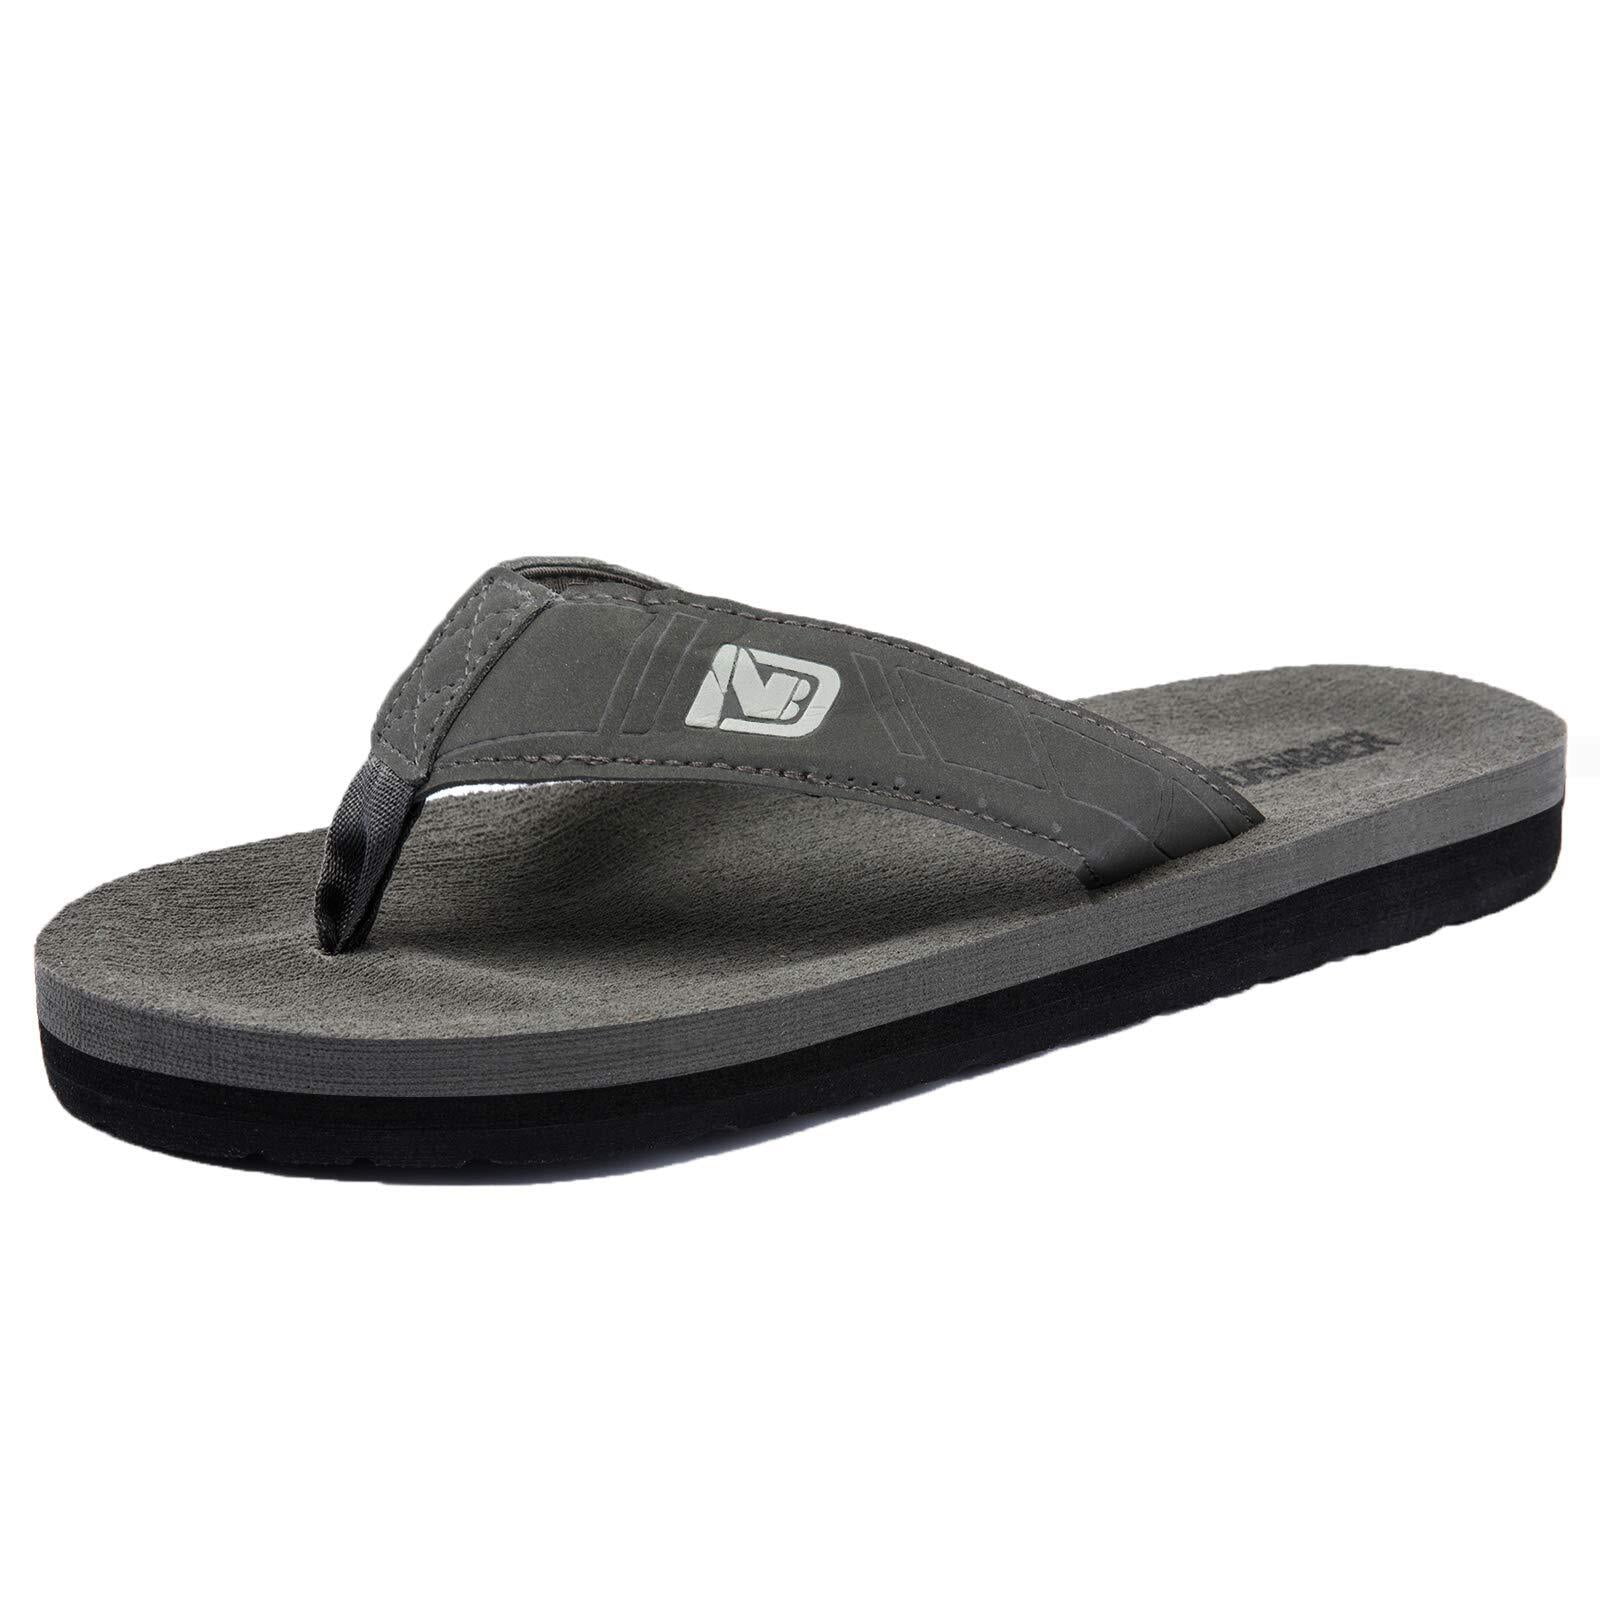 WOTTE Mens Flip Flops Comfortable Thong Sandals Lightweight Summer ...